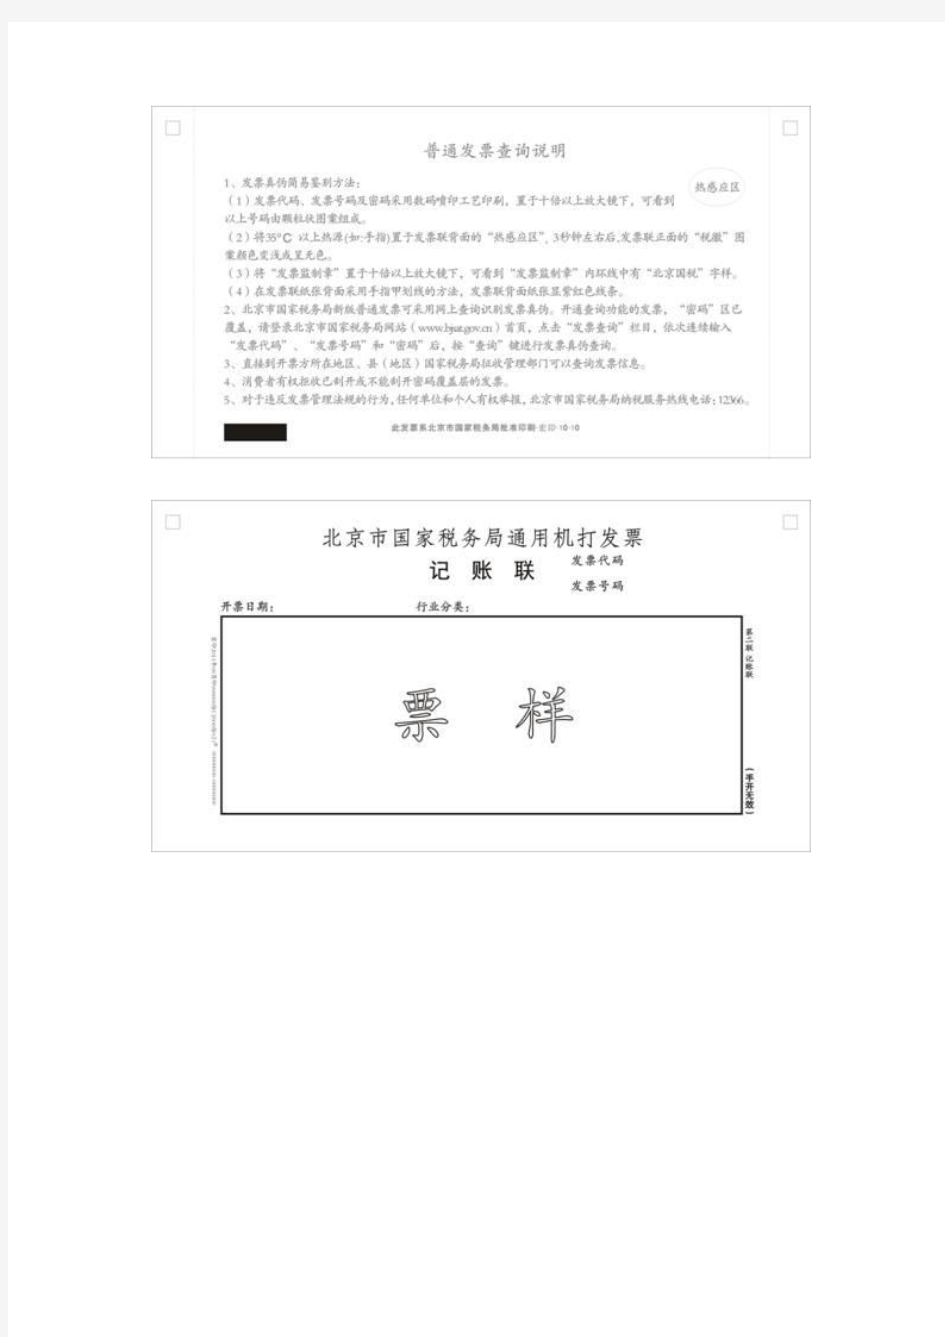 2011版北京市国家税务局通用机打发票通用手工发票 票样